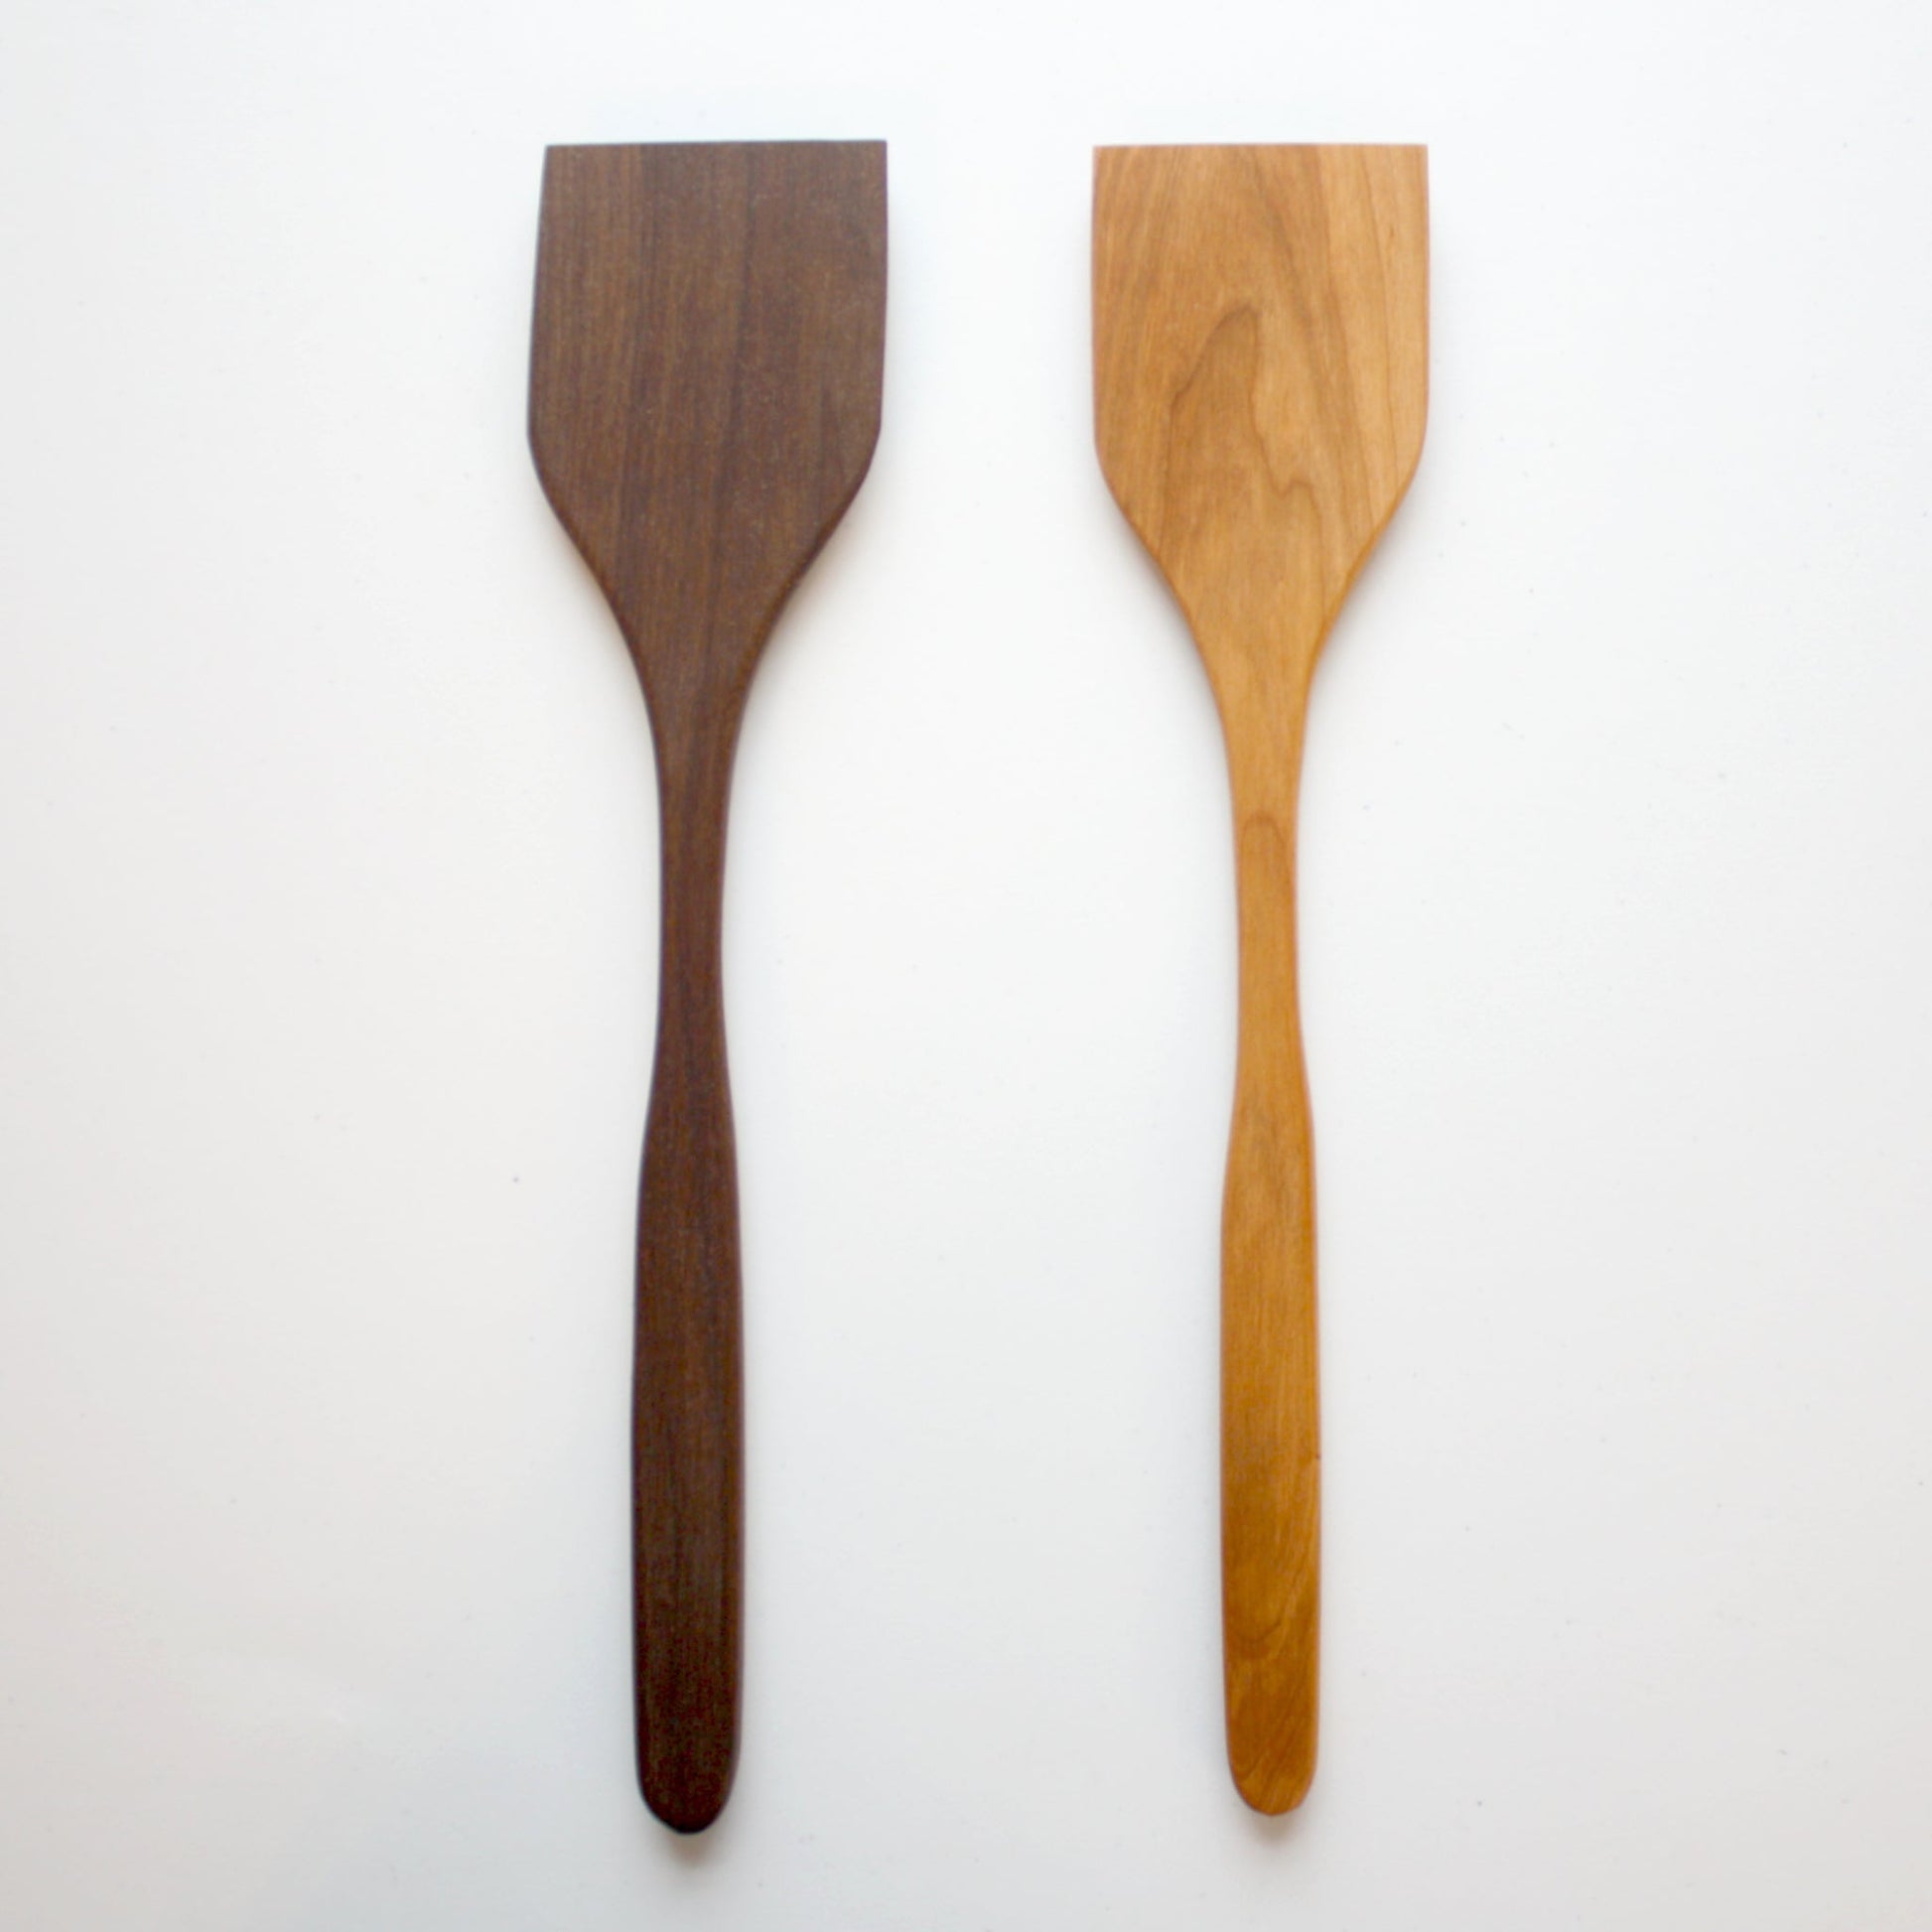 https://localwe.com/cdn/shop/products/woodenspatula1.jpg?v=1674046426&width=1946